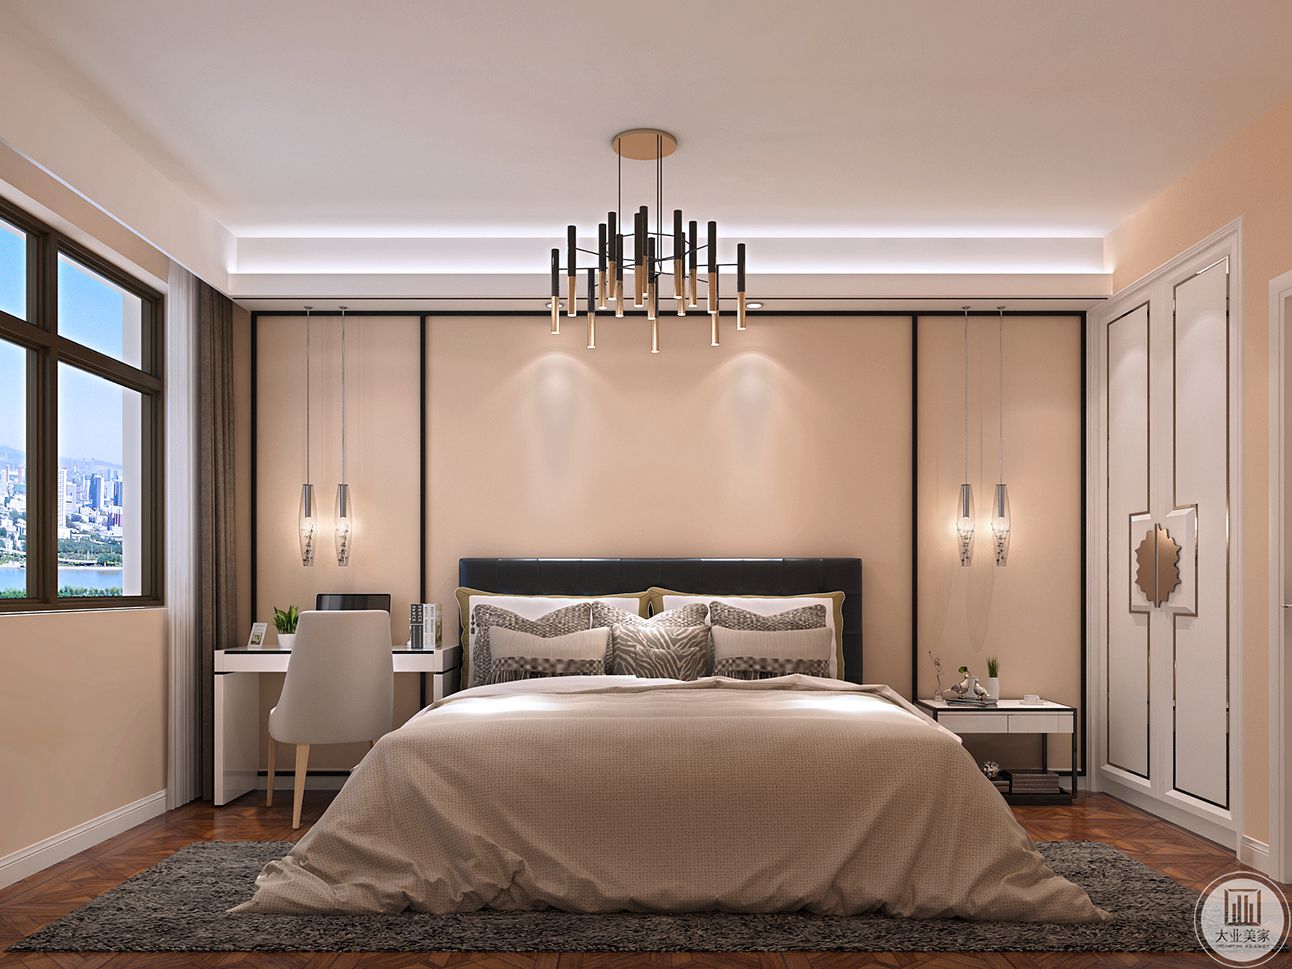 床头的软包比较简单，用一个简单的挂灯进行装饰，除了床品，基本都以客厅的色系为主，晚上更好入眠 。